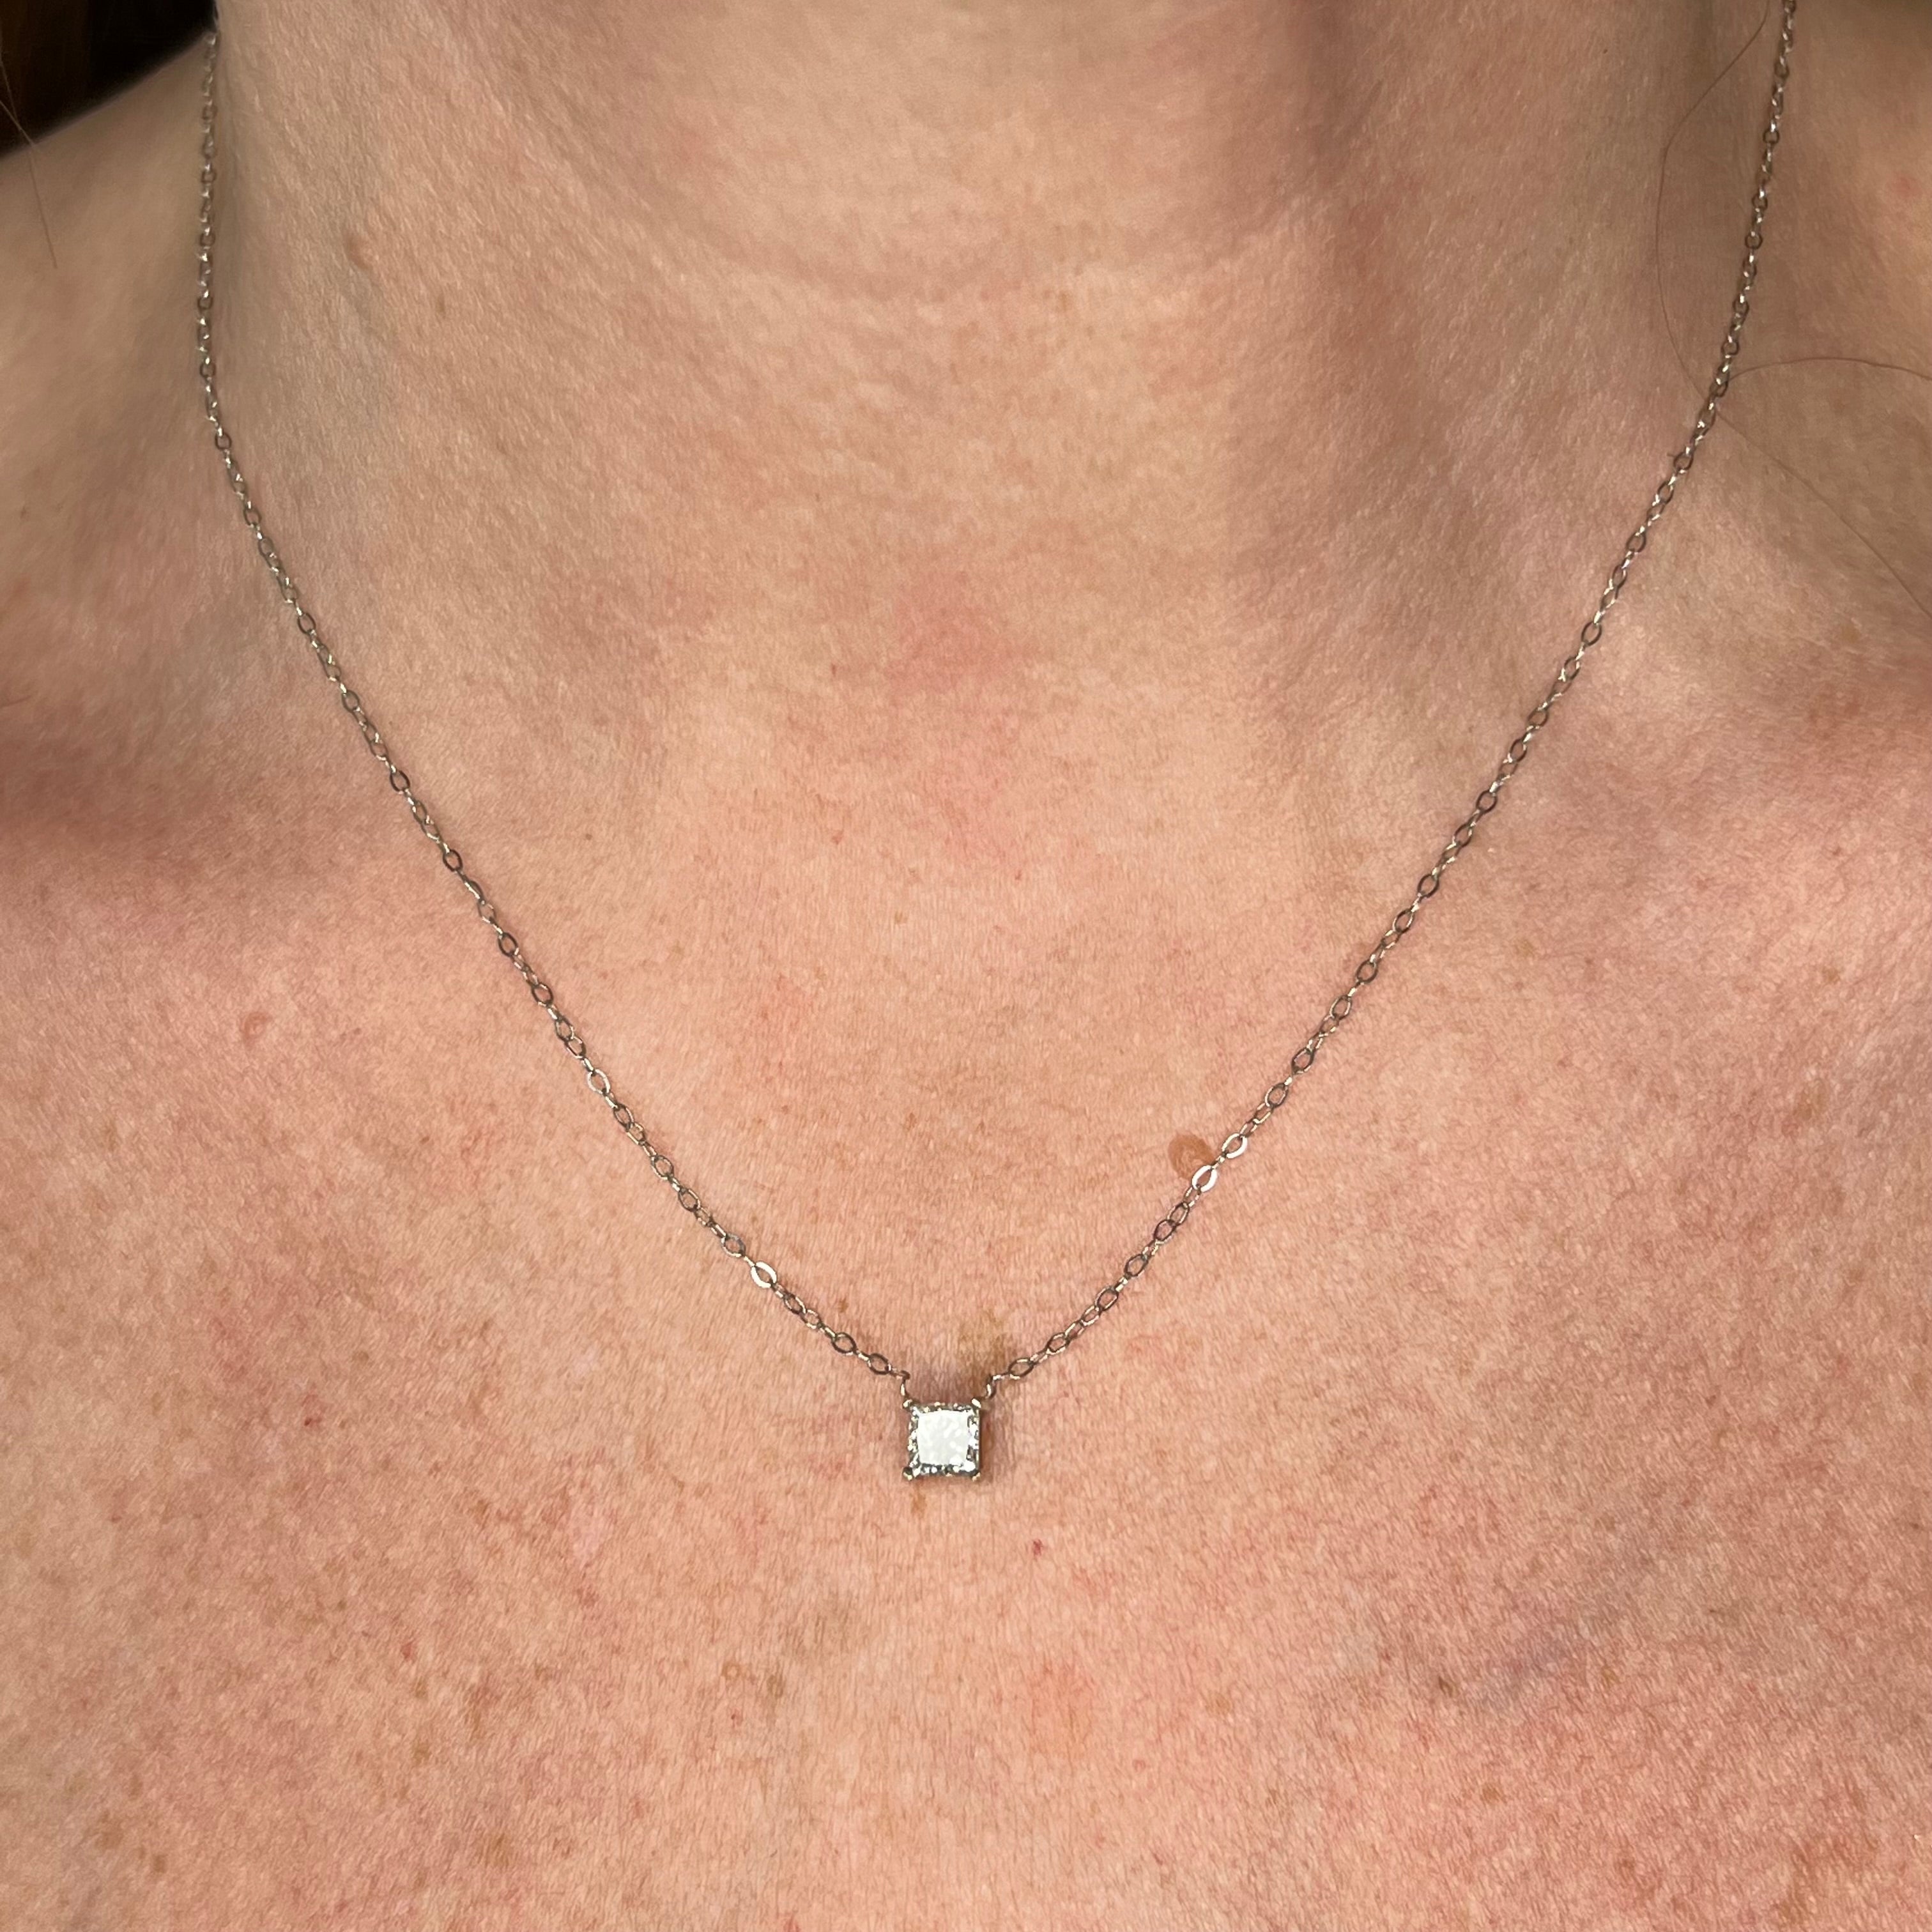 Nia princess cut diamonds necklace – Contour